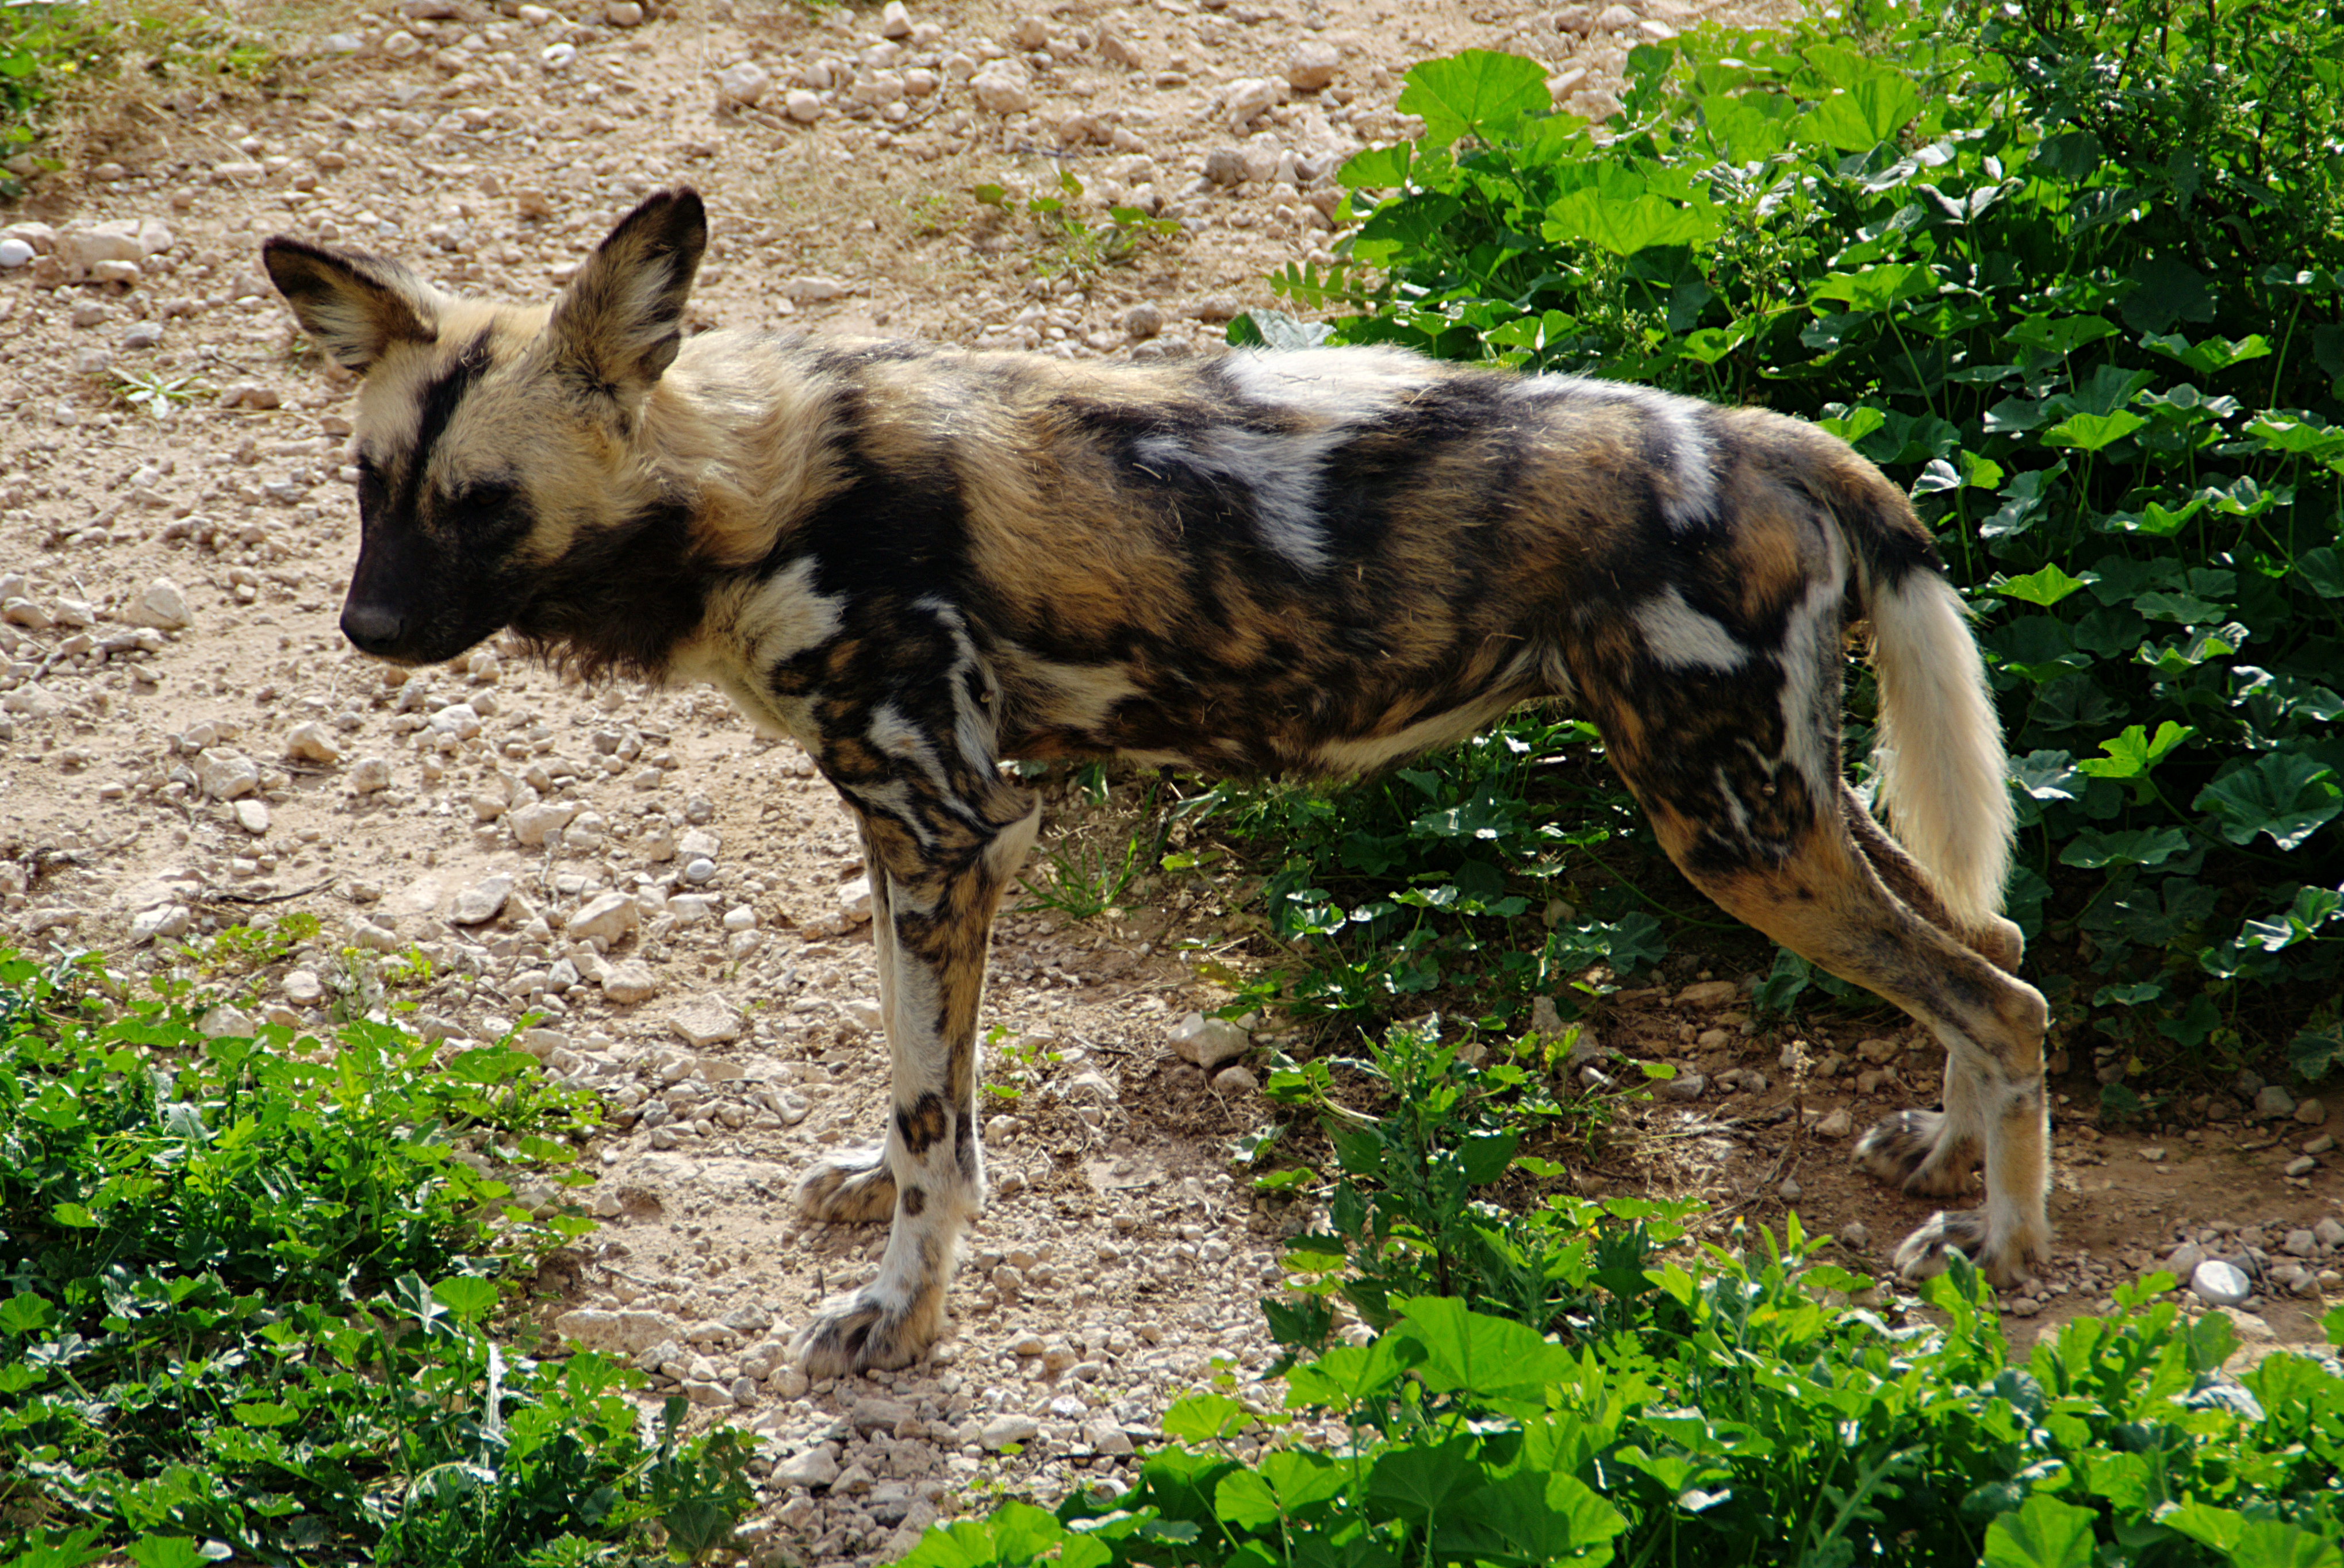 Parc animalier, Friguia, Tunisie, 25 décembre 2015 DSC 1858